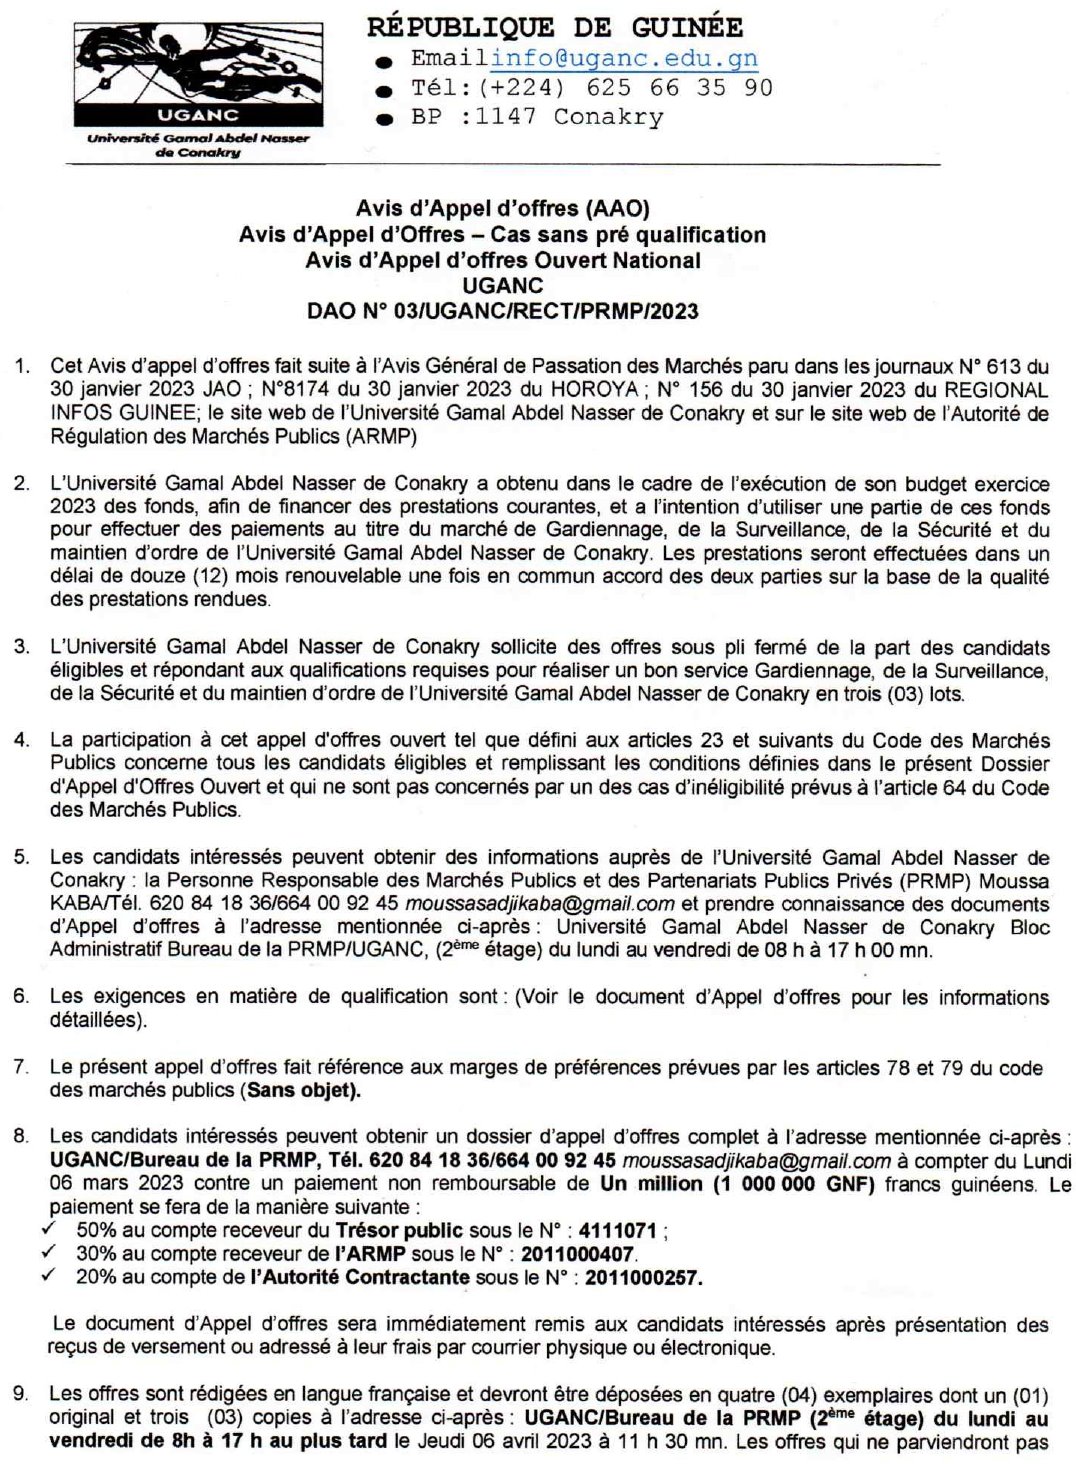 Avis d'appel d'offres pour le marché de Gardiennage, de la Surveillance, de la Sécurité et du maintien d'ordre de l'Université Gamal Abdel Nasser de Conakry | Page 1